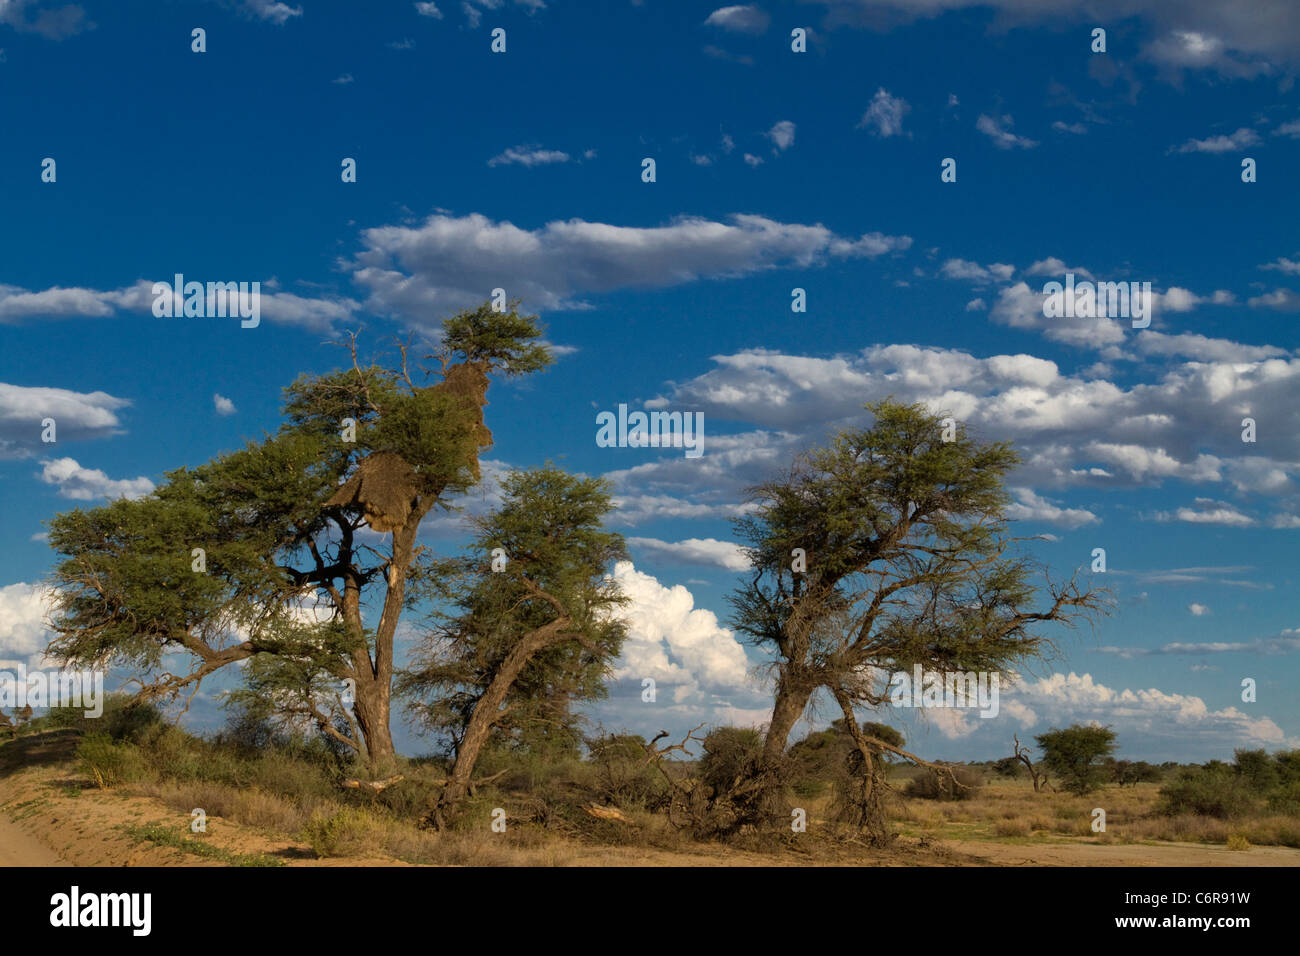 La savane du Kalahari avec un chemin de terre, Camelthorn arbres (Acacia erioloba), sociable weaver nest et cumulus épars Banque D'Images